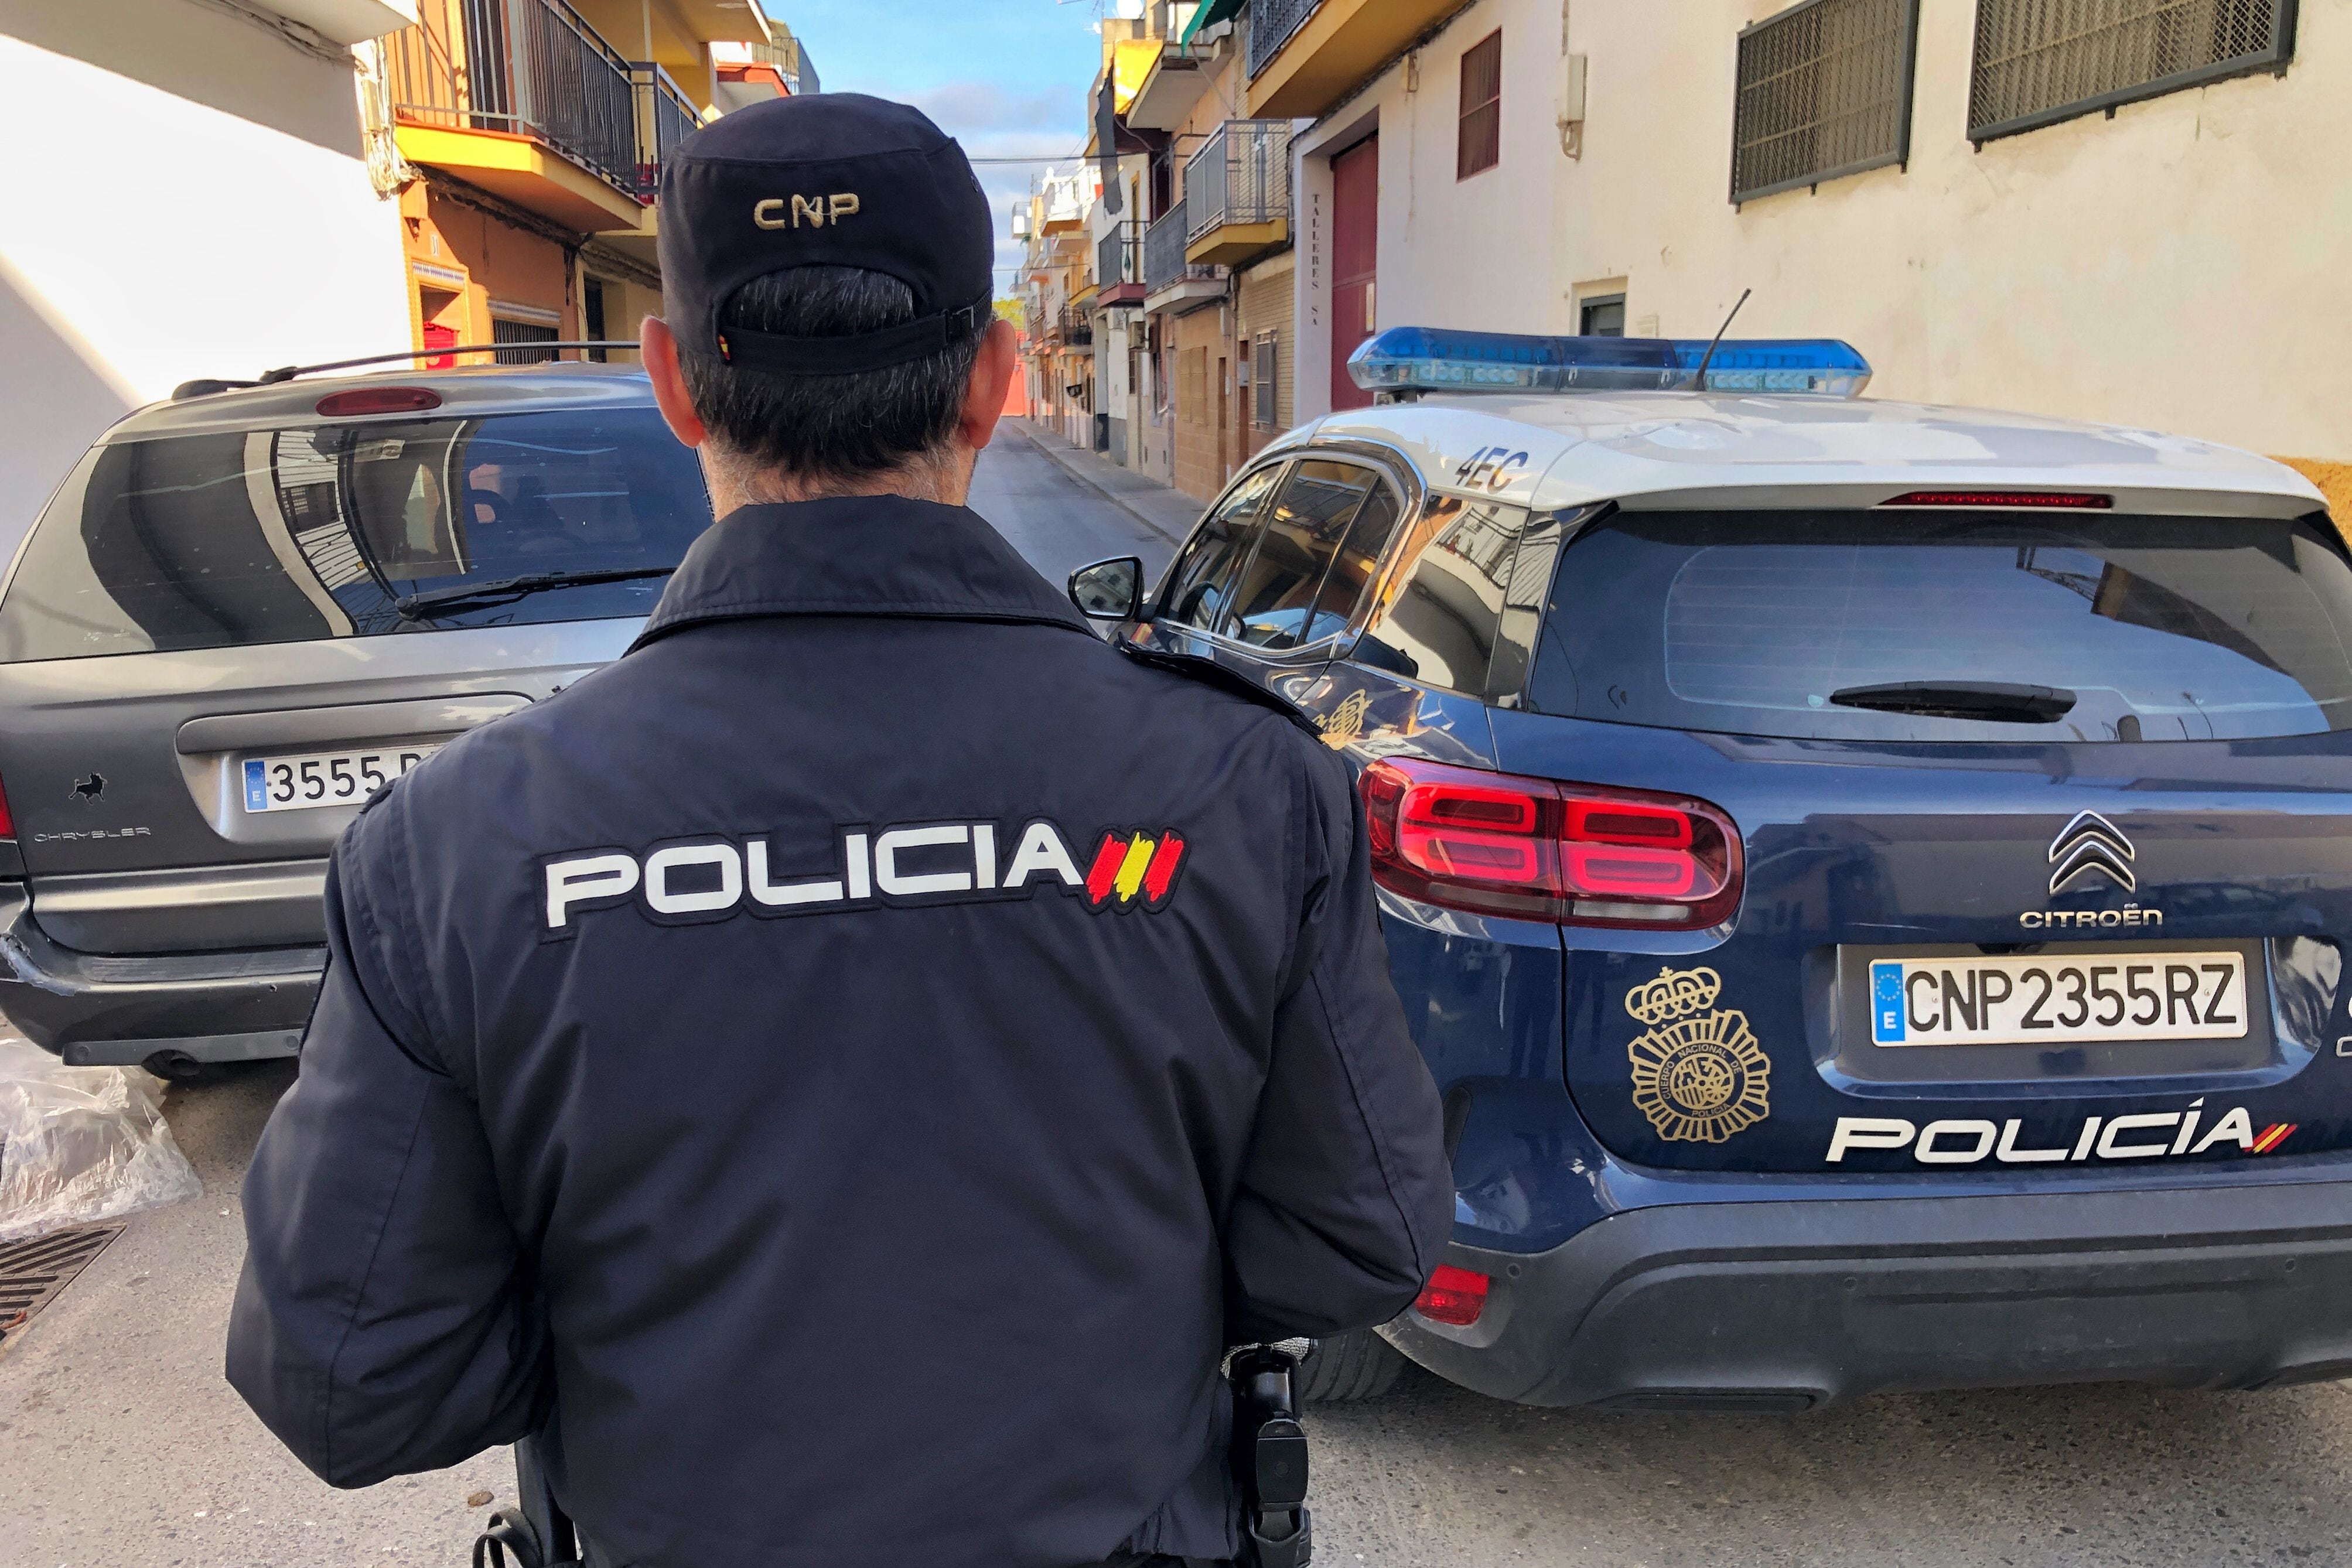 Una víctima de violencia de género con orden de alejamiento sufre dos ataques de su agresor en pocas horas en Badajoz